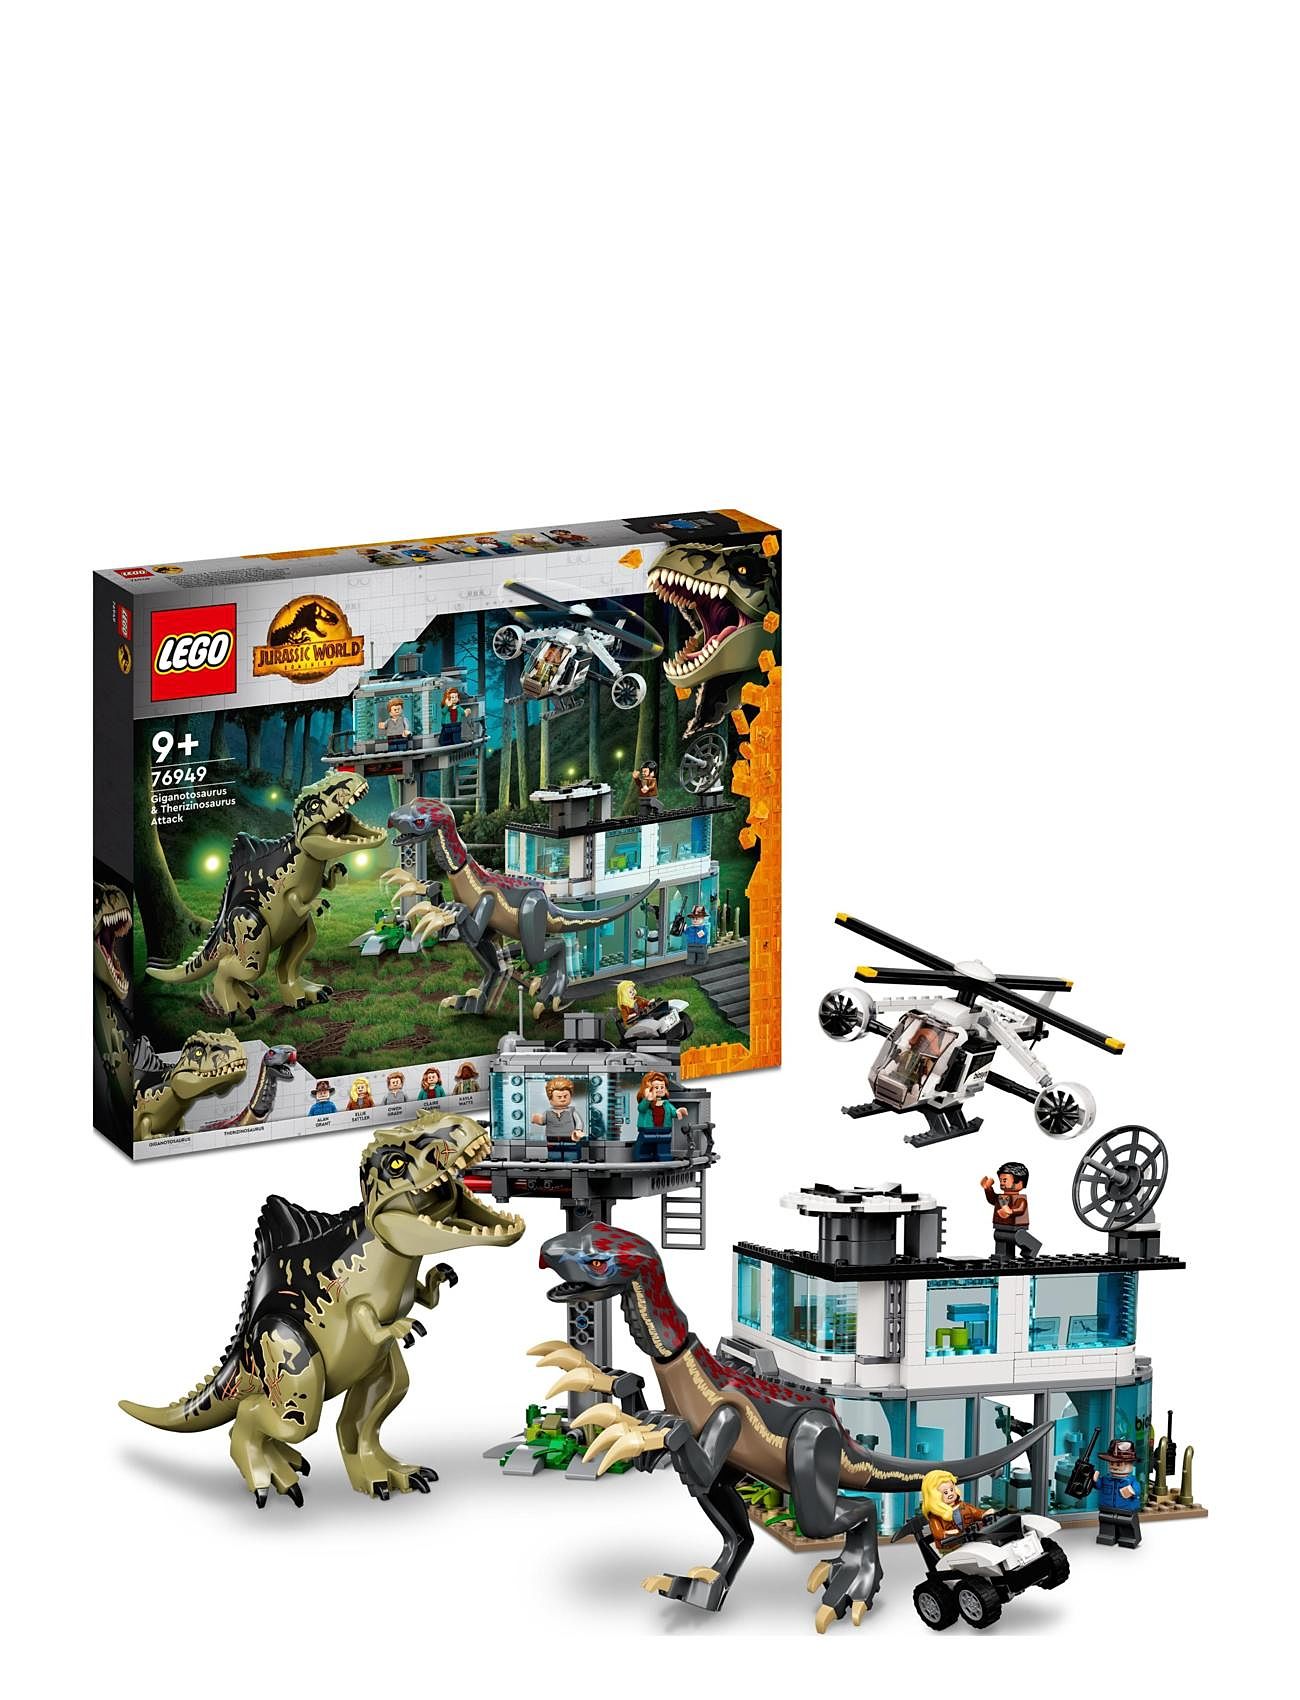 Giganotosaurus Attack Dinosaur Toy Toys Lego Toys Lego jurassic World Multi/patterned LEGO